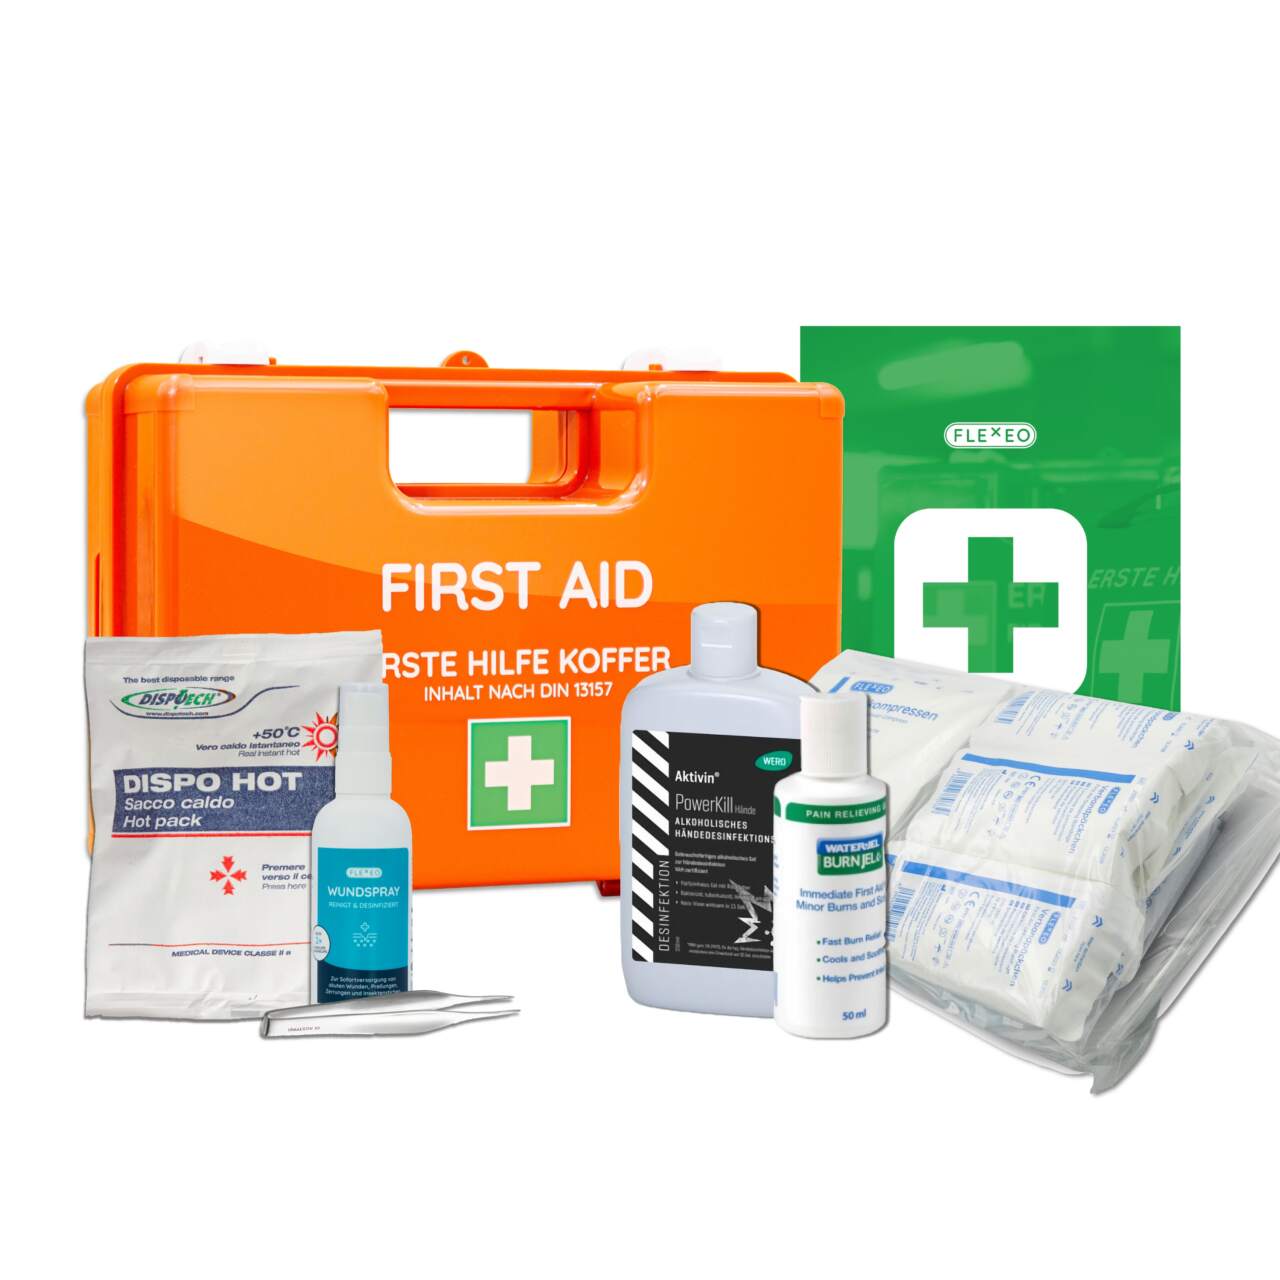 Erste-Hilfe-Koffer mobil, Inhalt nach DIN 13157, Verband-/Erste-Hilfe-Koffer,  Verband-/Erste-Hilfe-Schränke, Augenspülung und Erste-Hilfe, Arbeitsschutz und Sicherheit, Laborbedarf